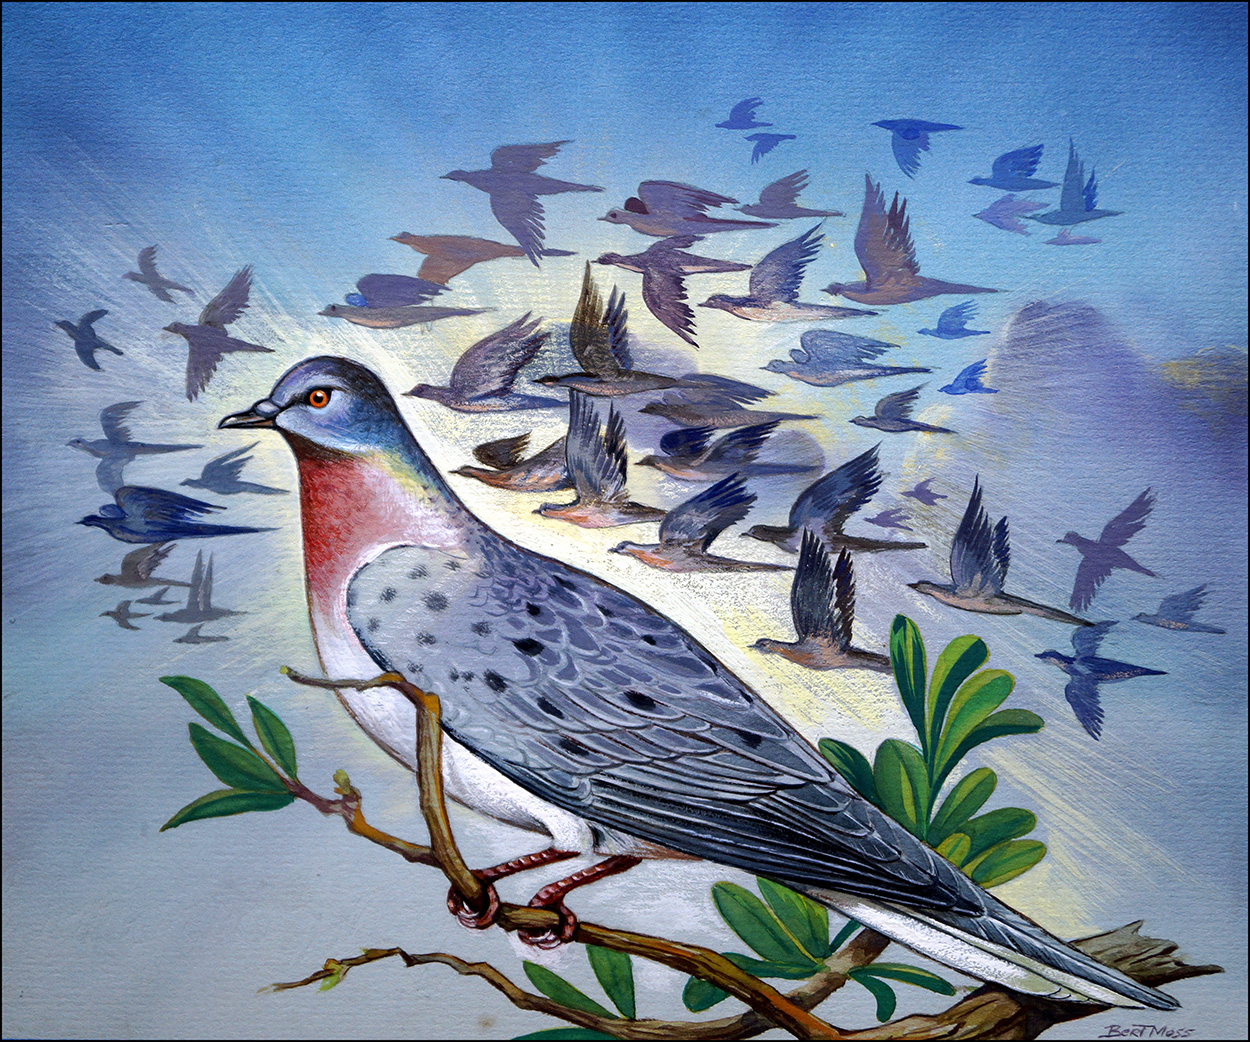 Passenger Pigeon (Original) (Signed) art by Bert Moss Art at The Illustration Art Gallery